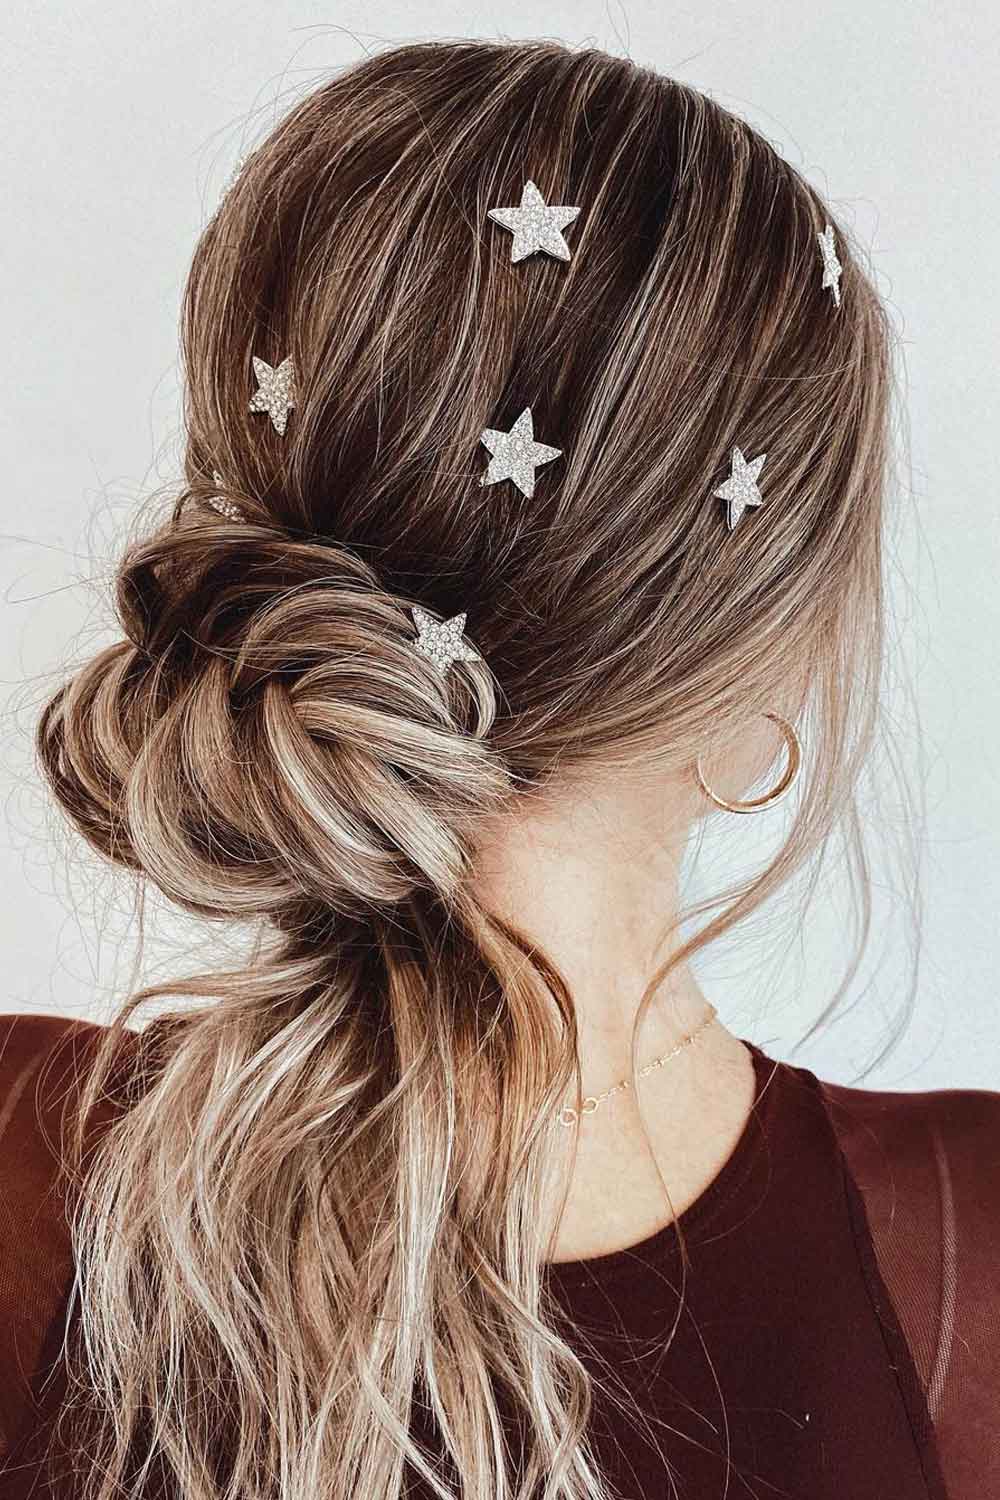 Peinado de cola de caballo con accesorios de estrella.